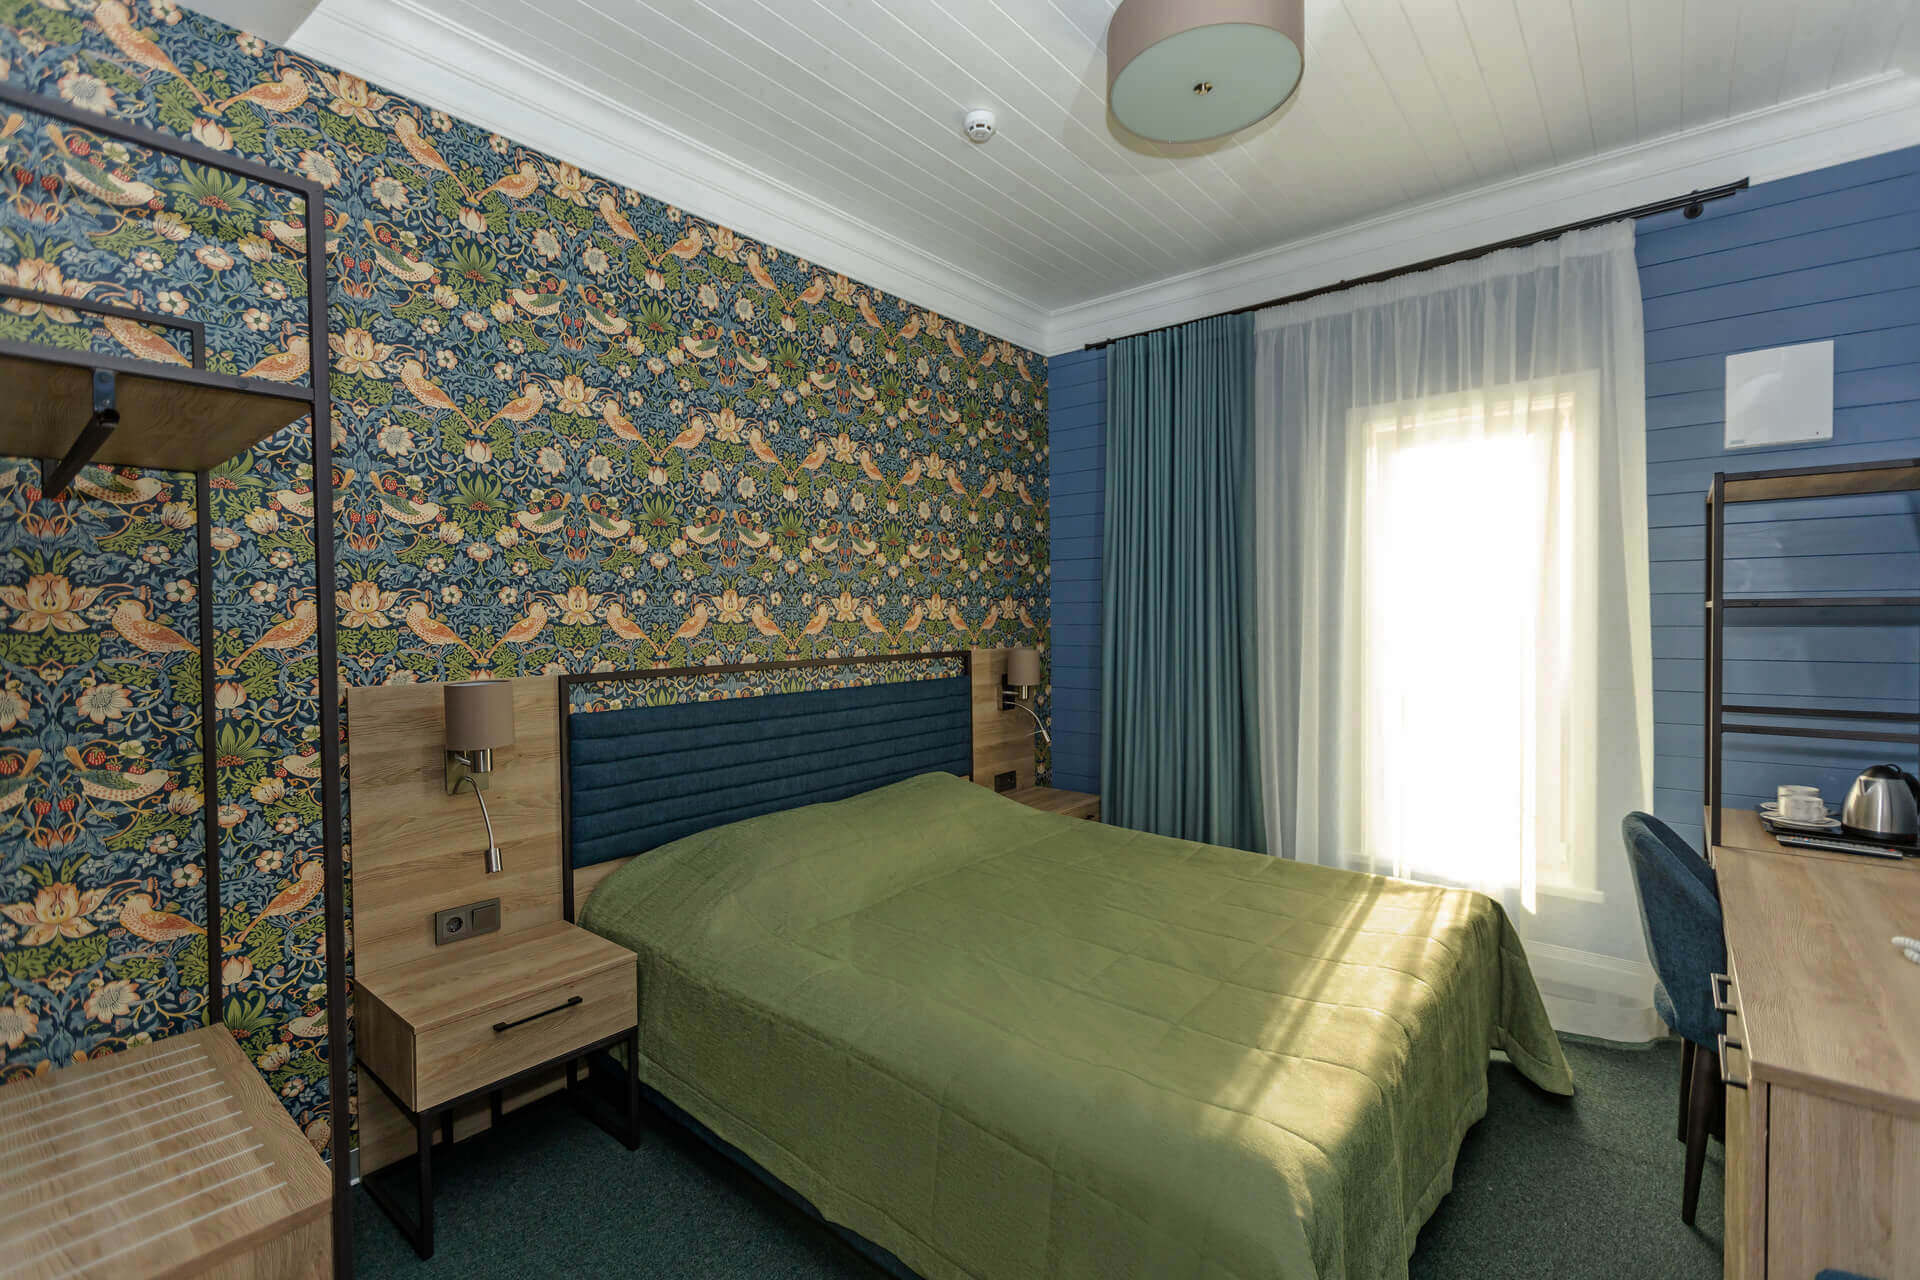 Цвет интерьера: зеленый, синий и белый. На стене у кровати - красивые обои с узором.